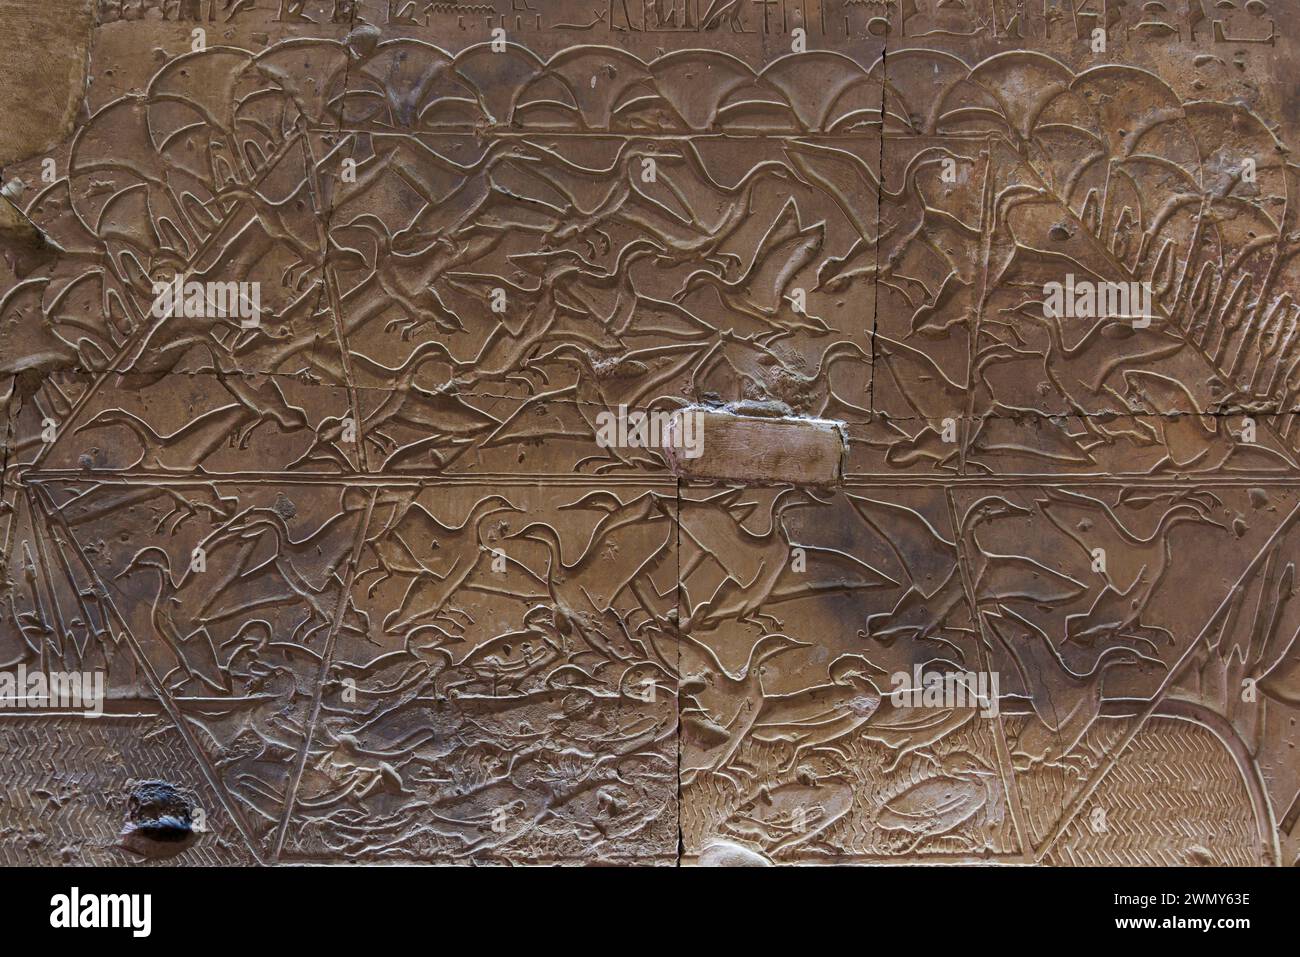 Egitto, Sohag, Abydos, città di pellegrinaggio dei faraoni dichiarata Patrimonio dell'Umanità dall'UNESCO, tempio di Seti i, bassorilievo di molte anatre Foto Stock